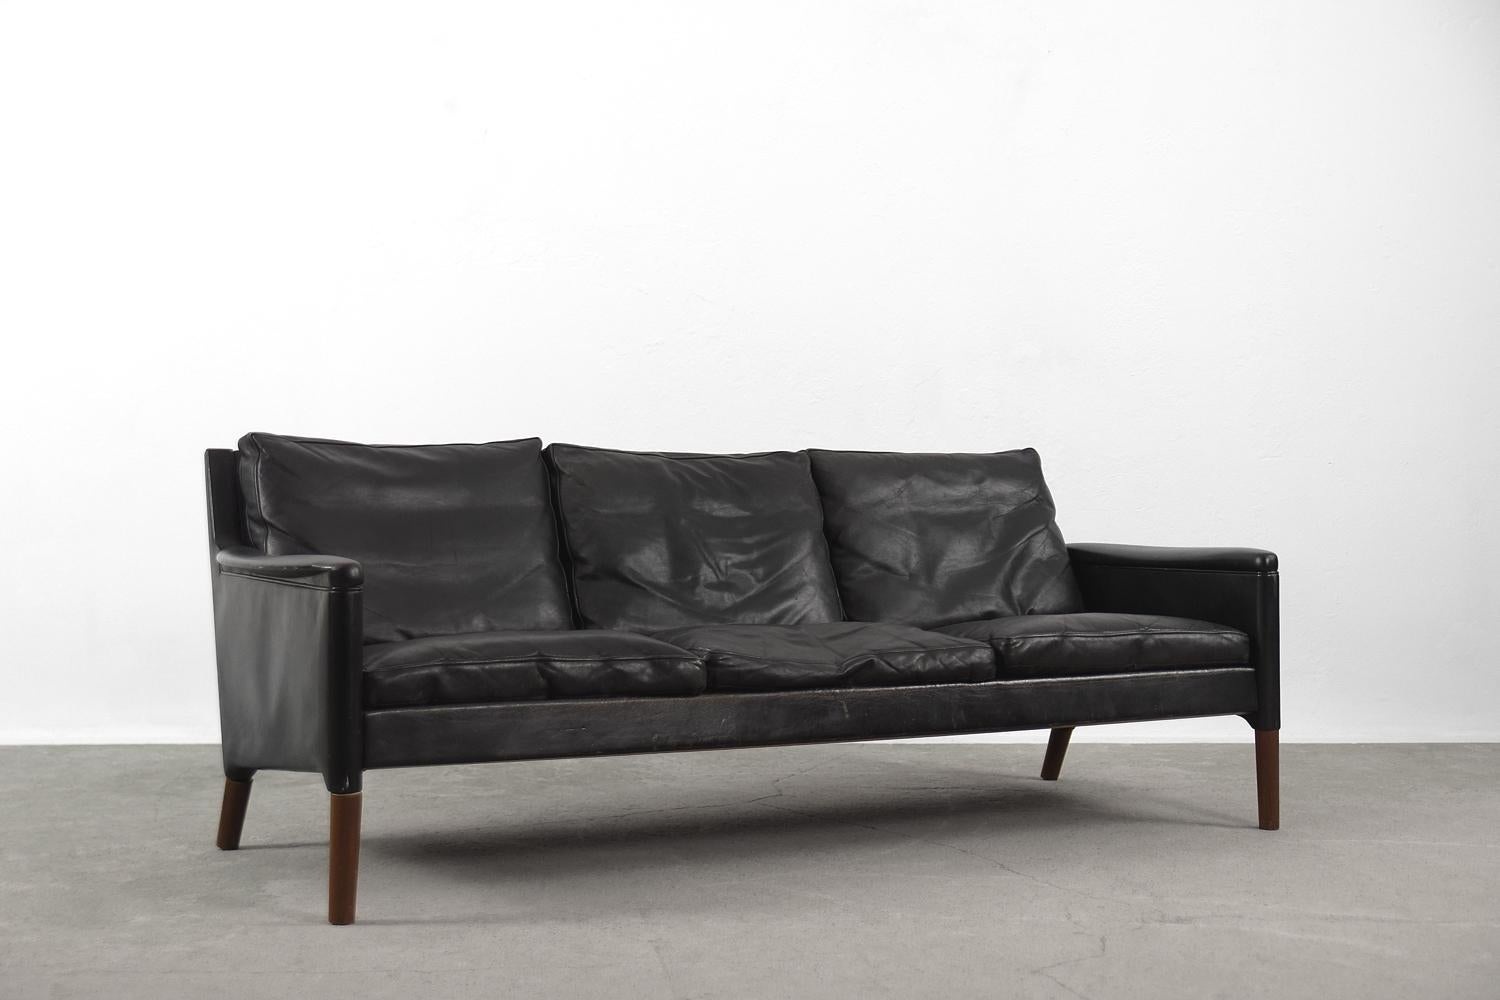 Dieses dreisitzige Ledersofa wurde in den 1950er Jahren von Kurt Østervig für den dänischen Hersteller Centrum Møbler entworfen. Es handelt sich um das Modell 55 aus der frühen Produktionszeit. Das Sofa ist mit schwarzem Leder mit natürlicher Patina